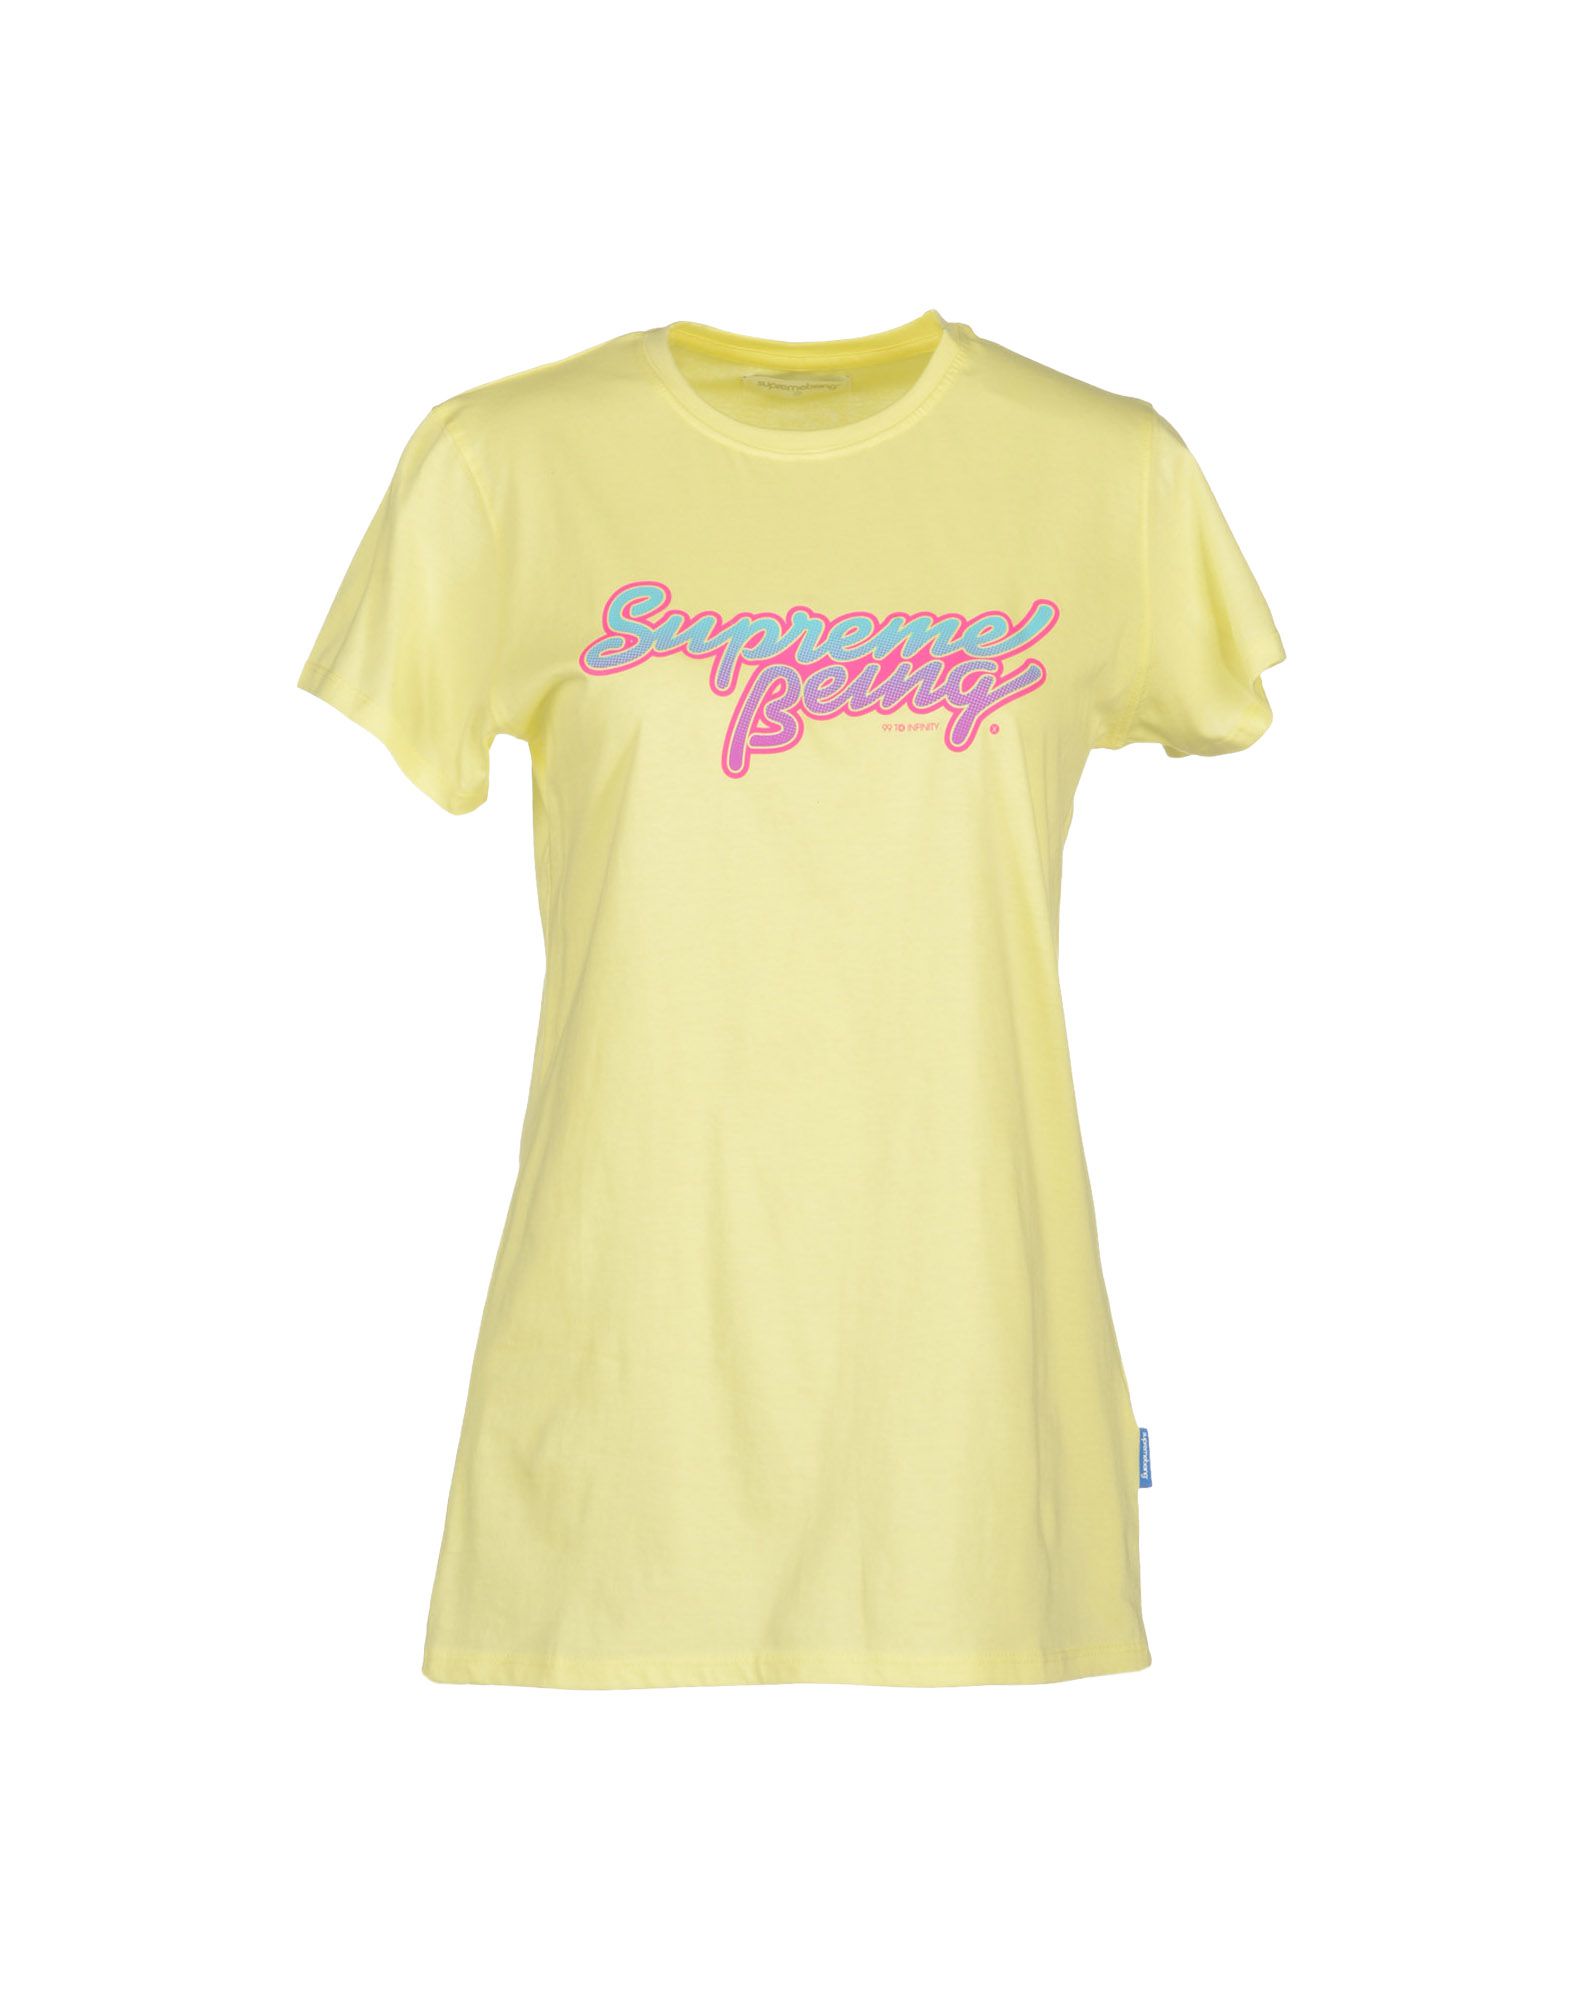 Foto Supreme Being Camisetas De Manga Corta Mujer Amarillo foto 810762